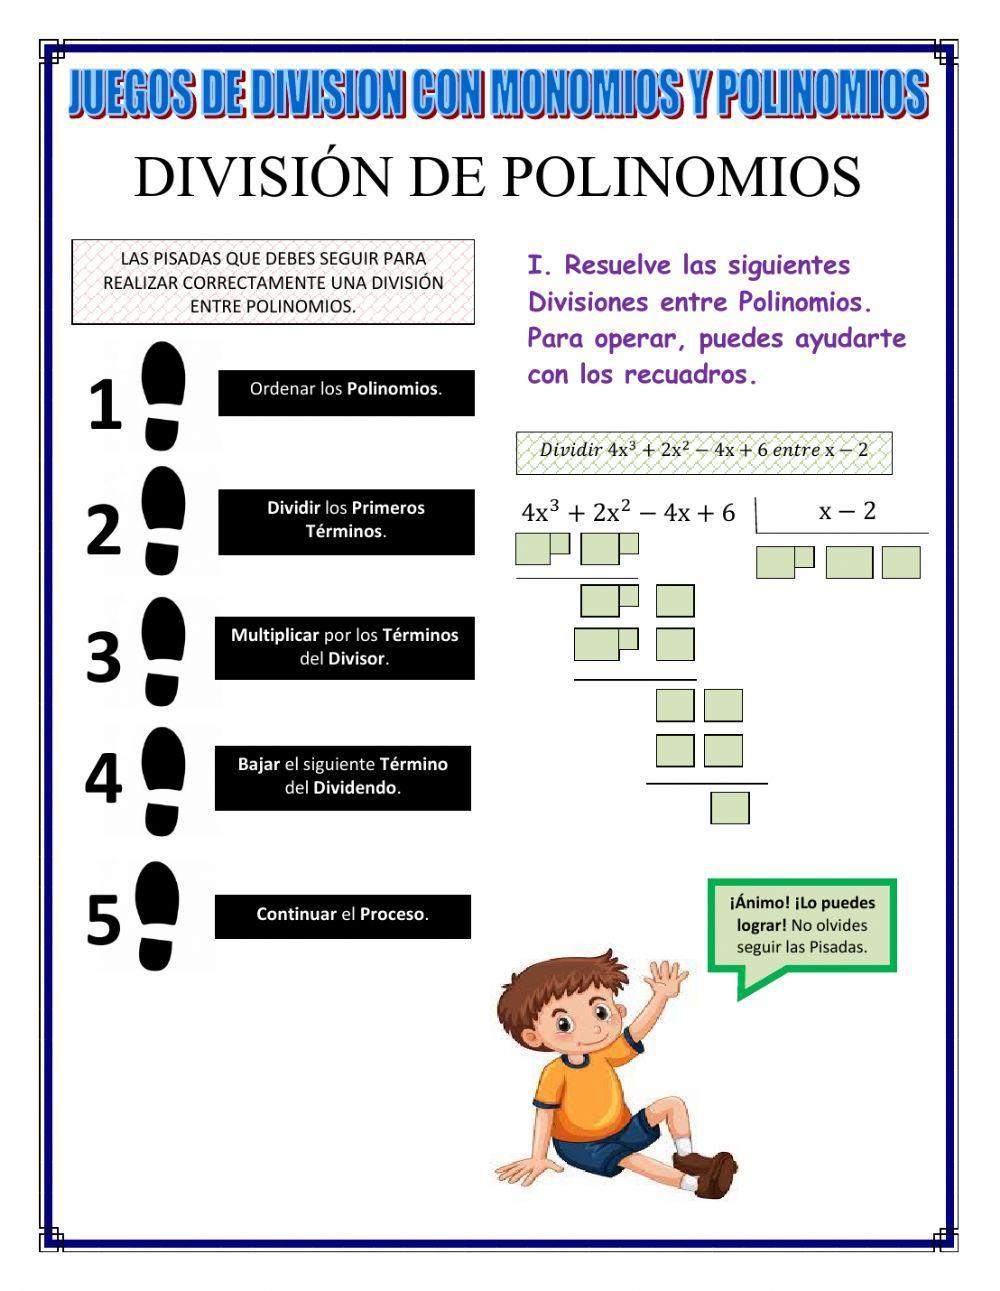 División de Polinomios